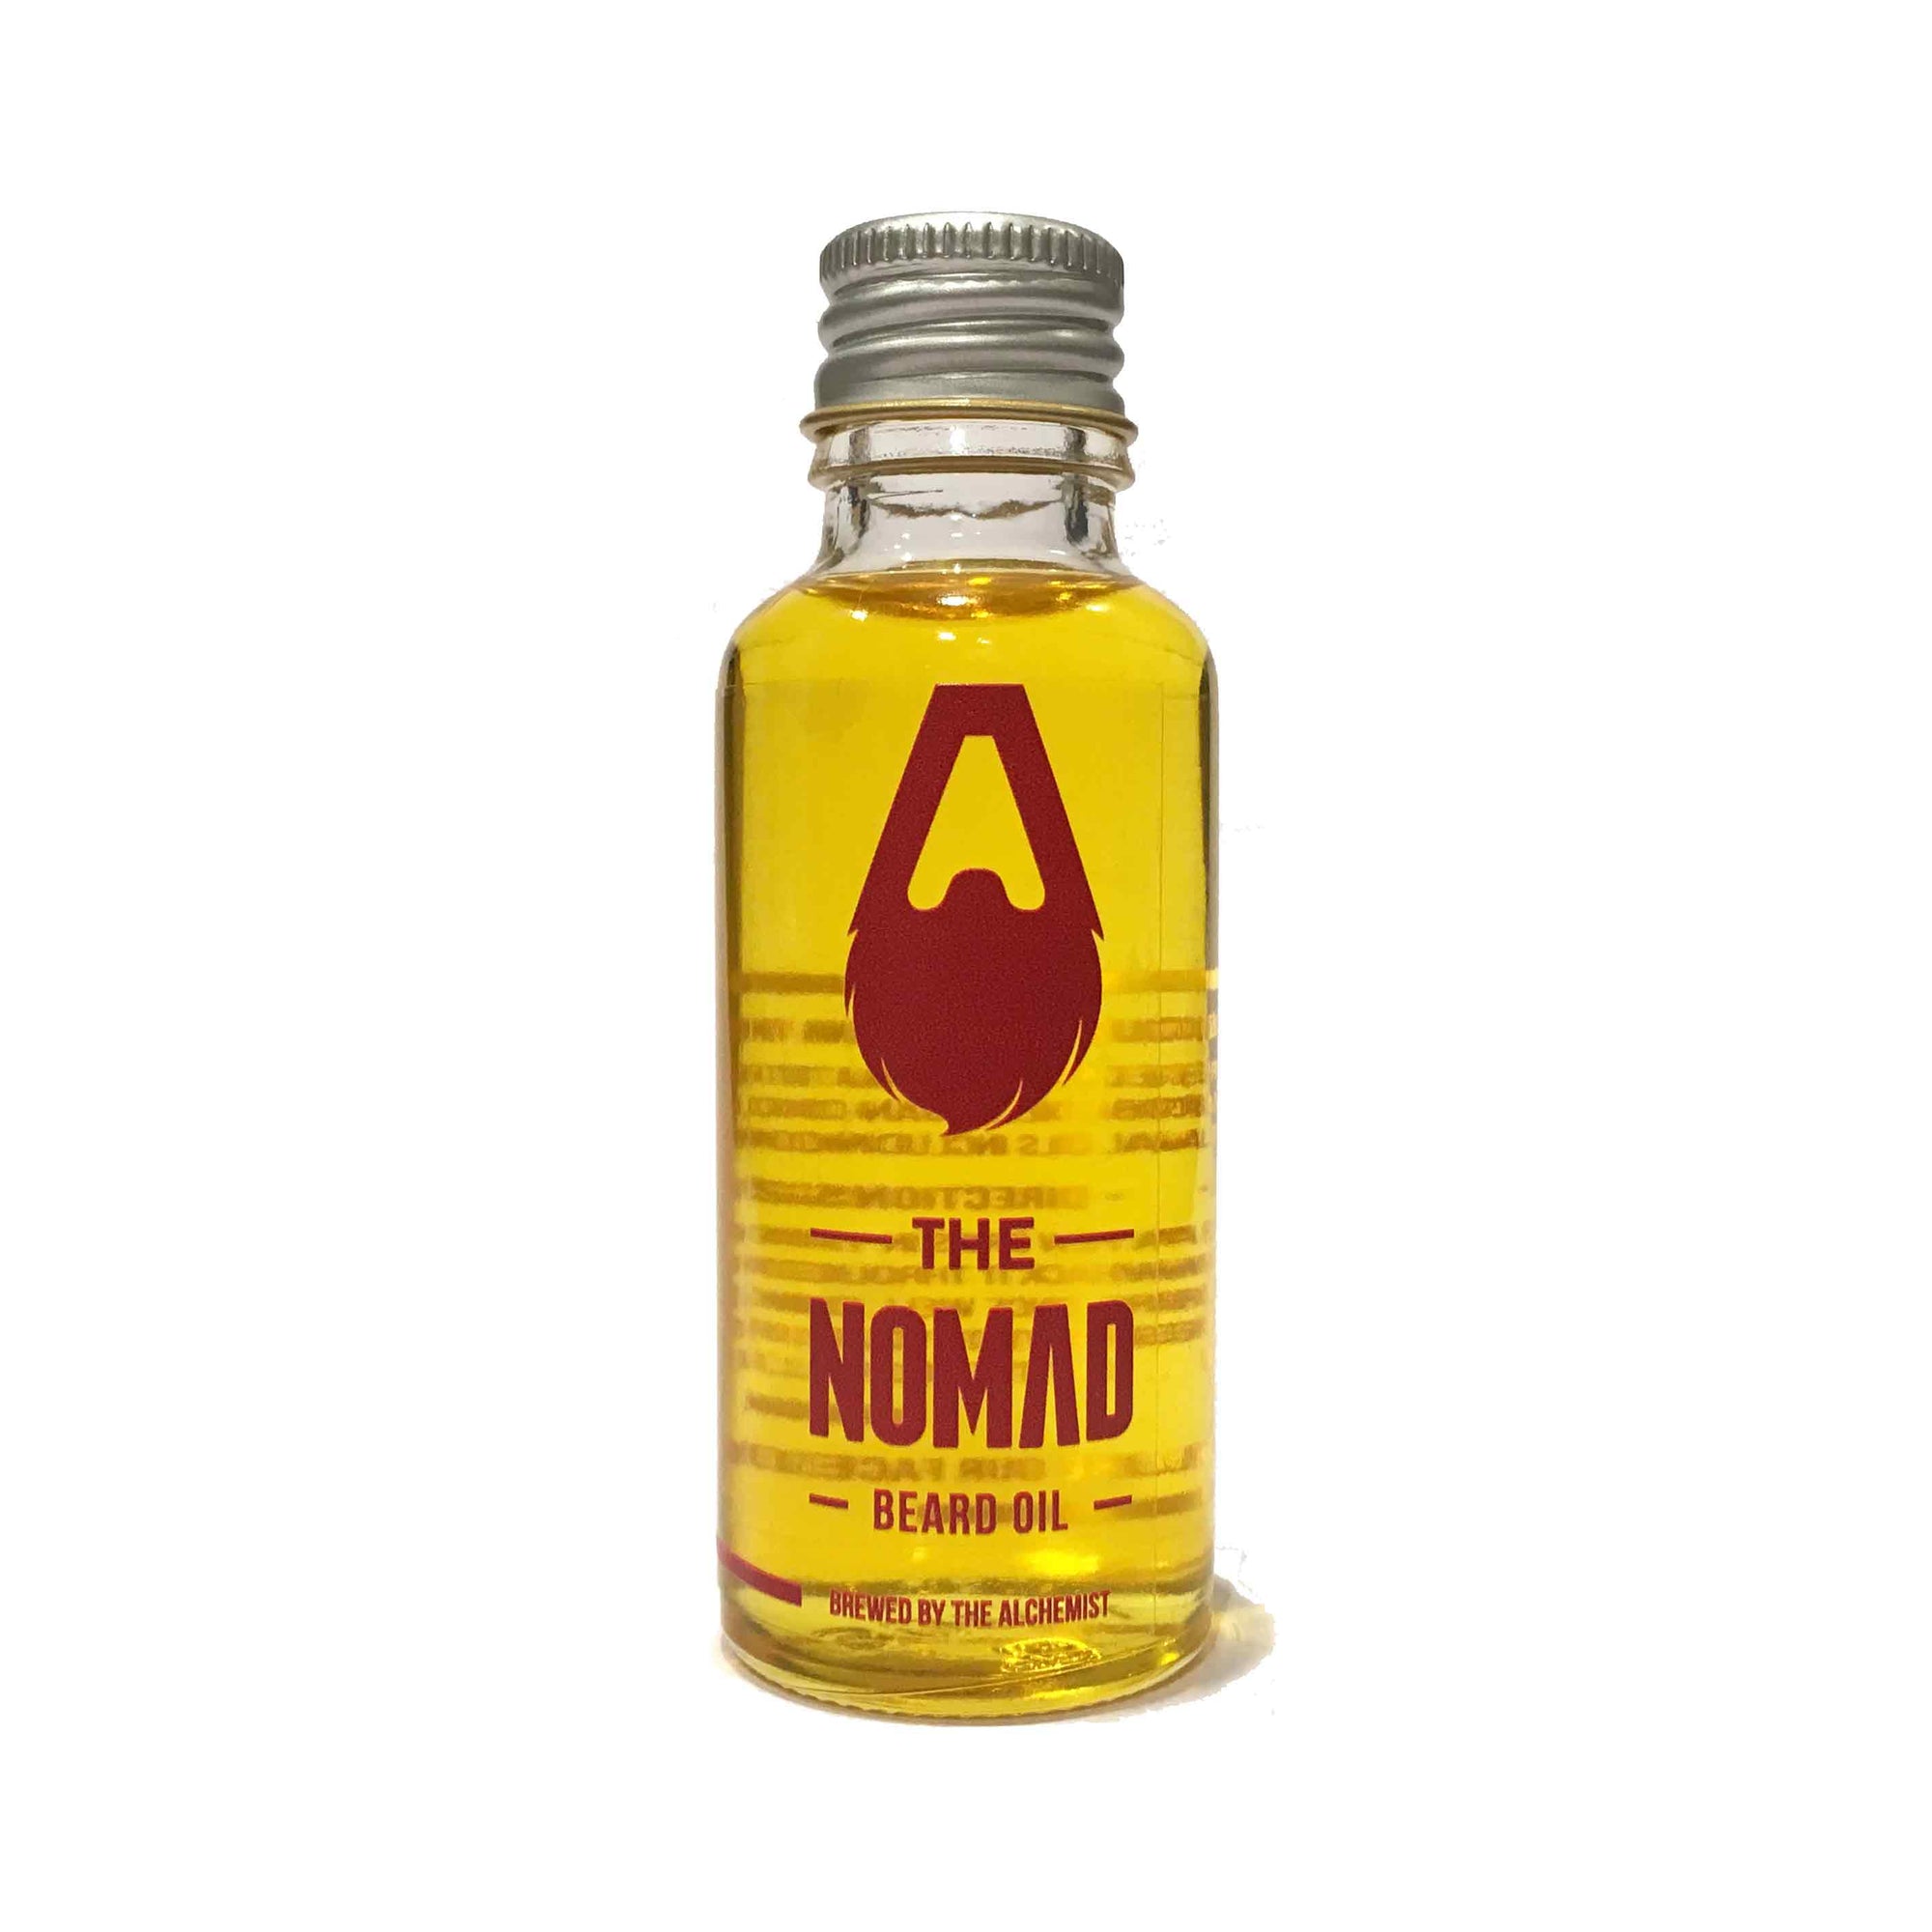 The nomad beard oil by the alchemist_Beardgrooming kit nz-Beard care-gifts for men-gift ideas for men-giftsformennz